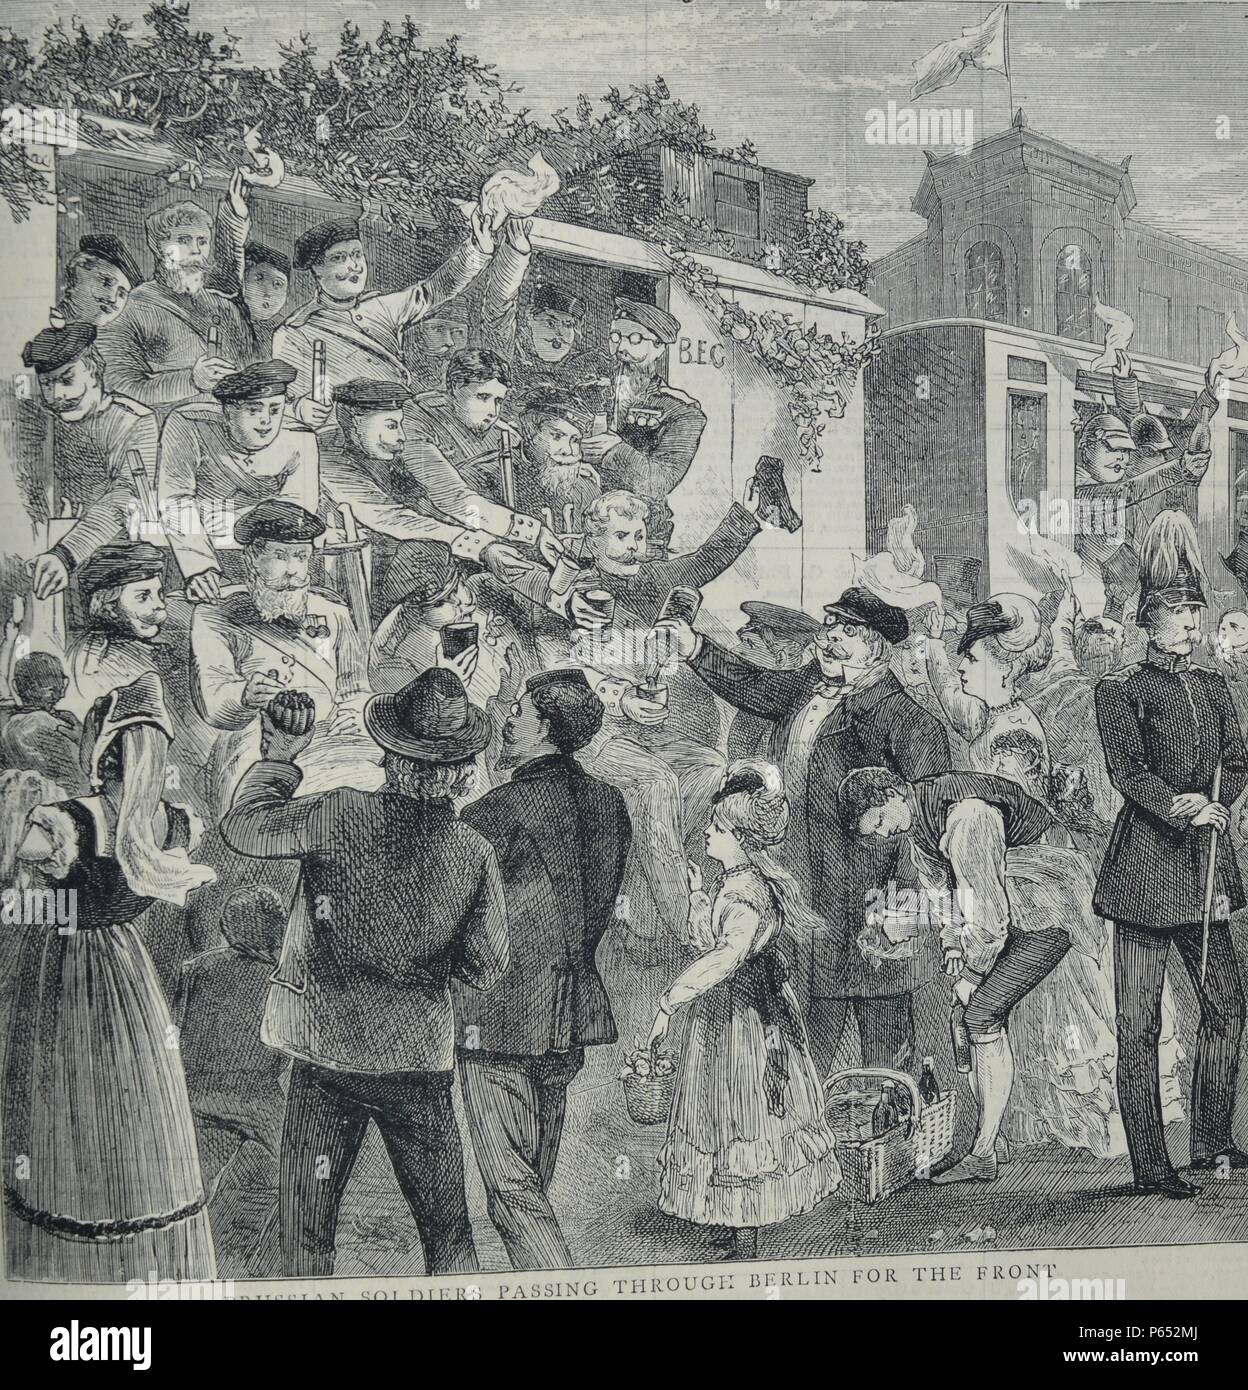 Soldats Prussiens gravure illustre passant par Berlin sur leur chemin vers l'avant. Datée 1870 Banque D'Images